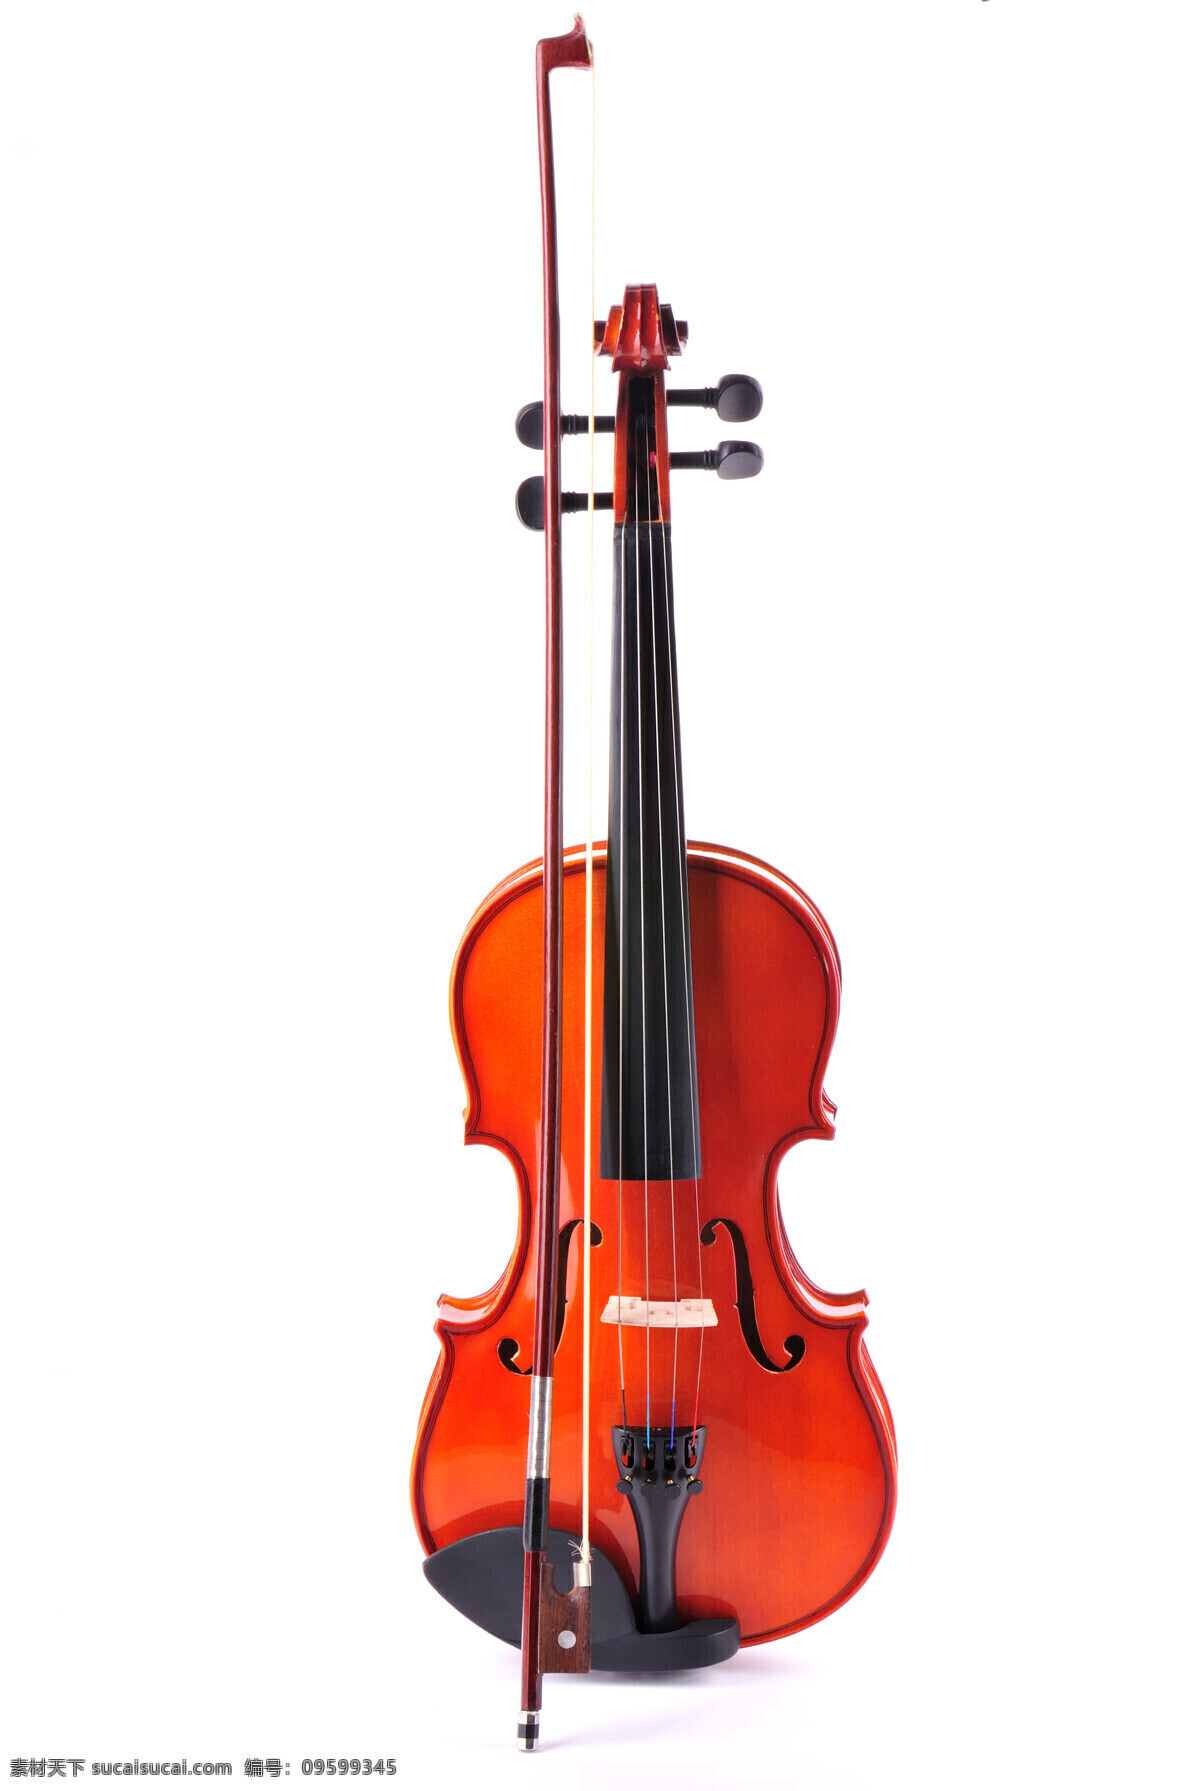 小提琴摄影 小提琴 乐器 音乐 音乐器材 影音娱乐 生活百科 白色